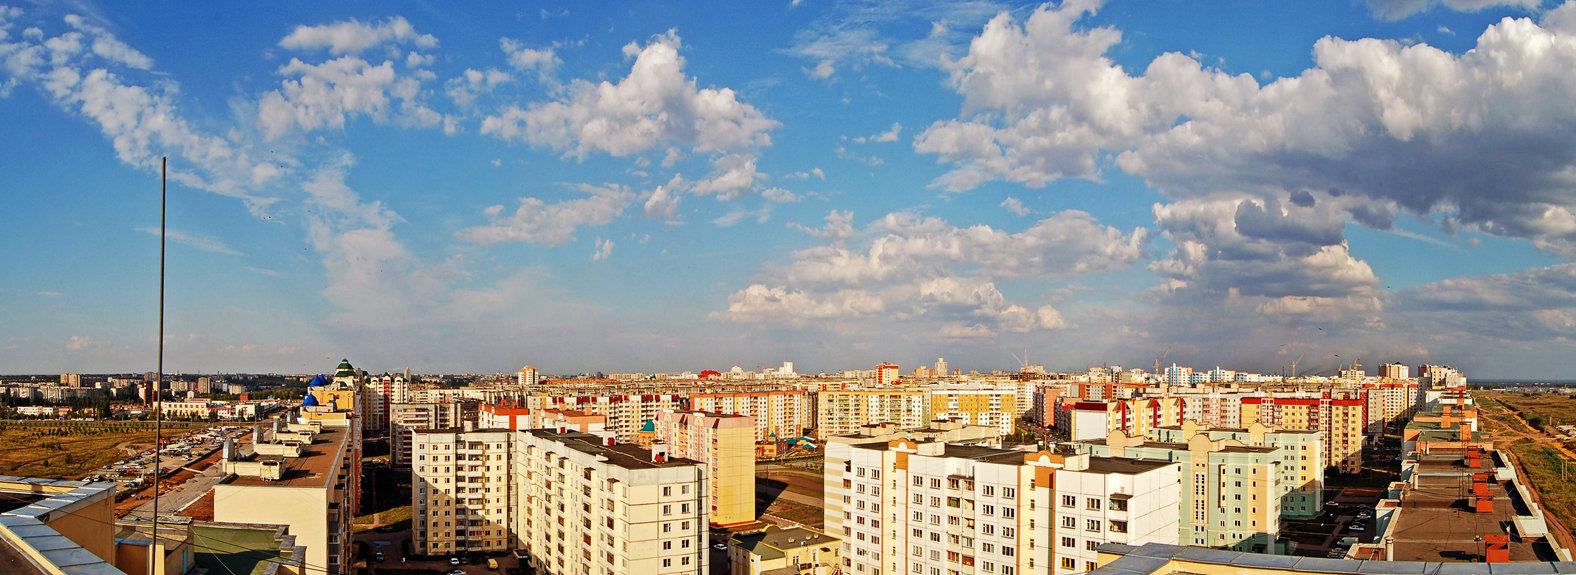 Липецк панорама города